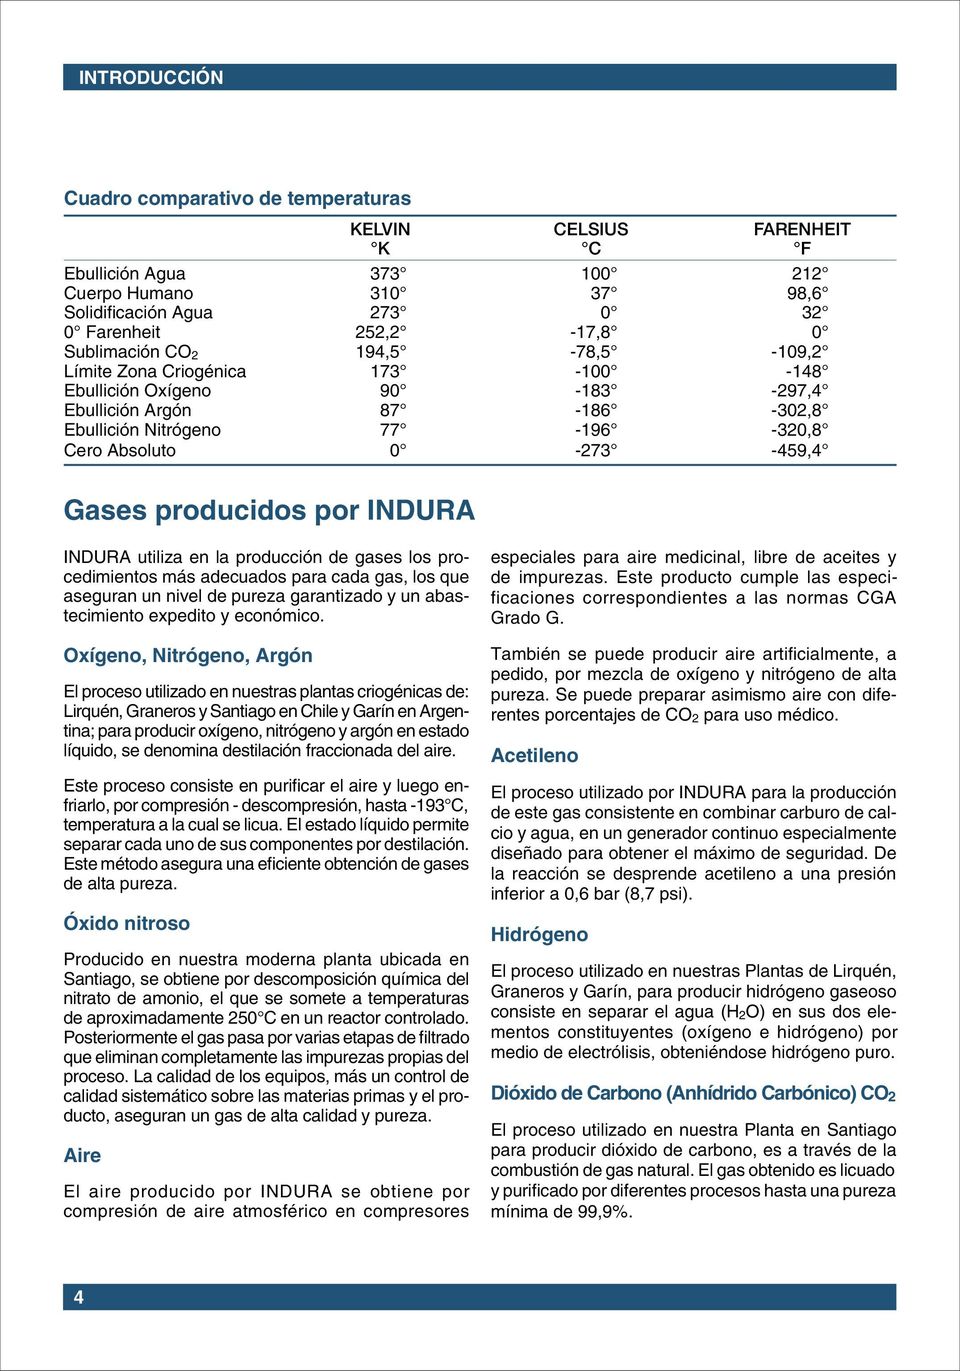 producidos por INDURA INDURA utiliza en la producción de gases los procedimientos más adecuados para cada gas, los que aseguran un nivel de pureza garantizado y un abastecimiento expedito y económico.